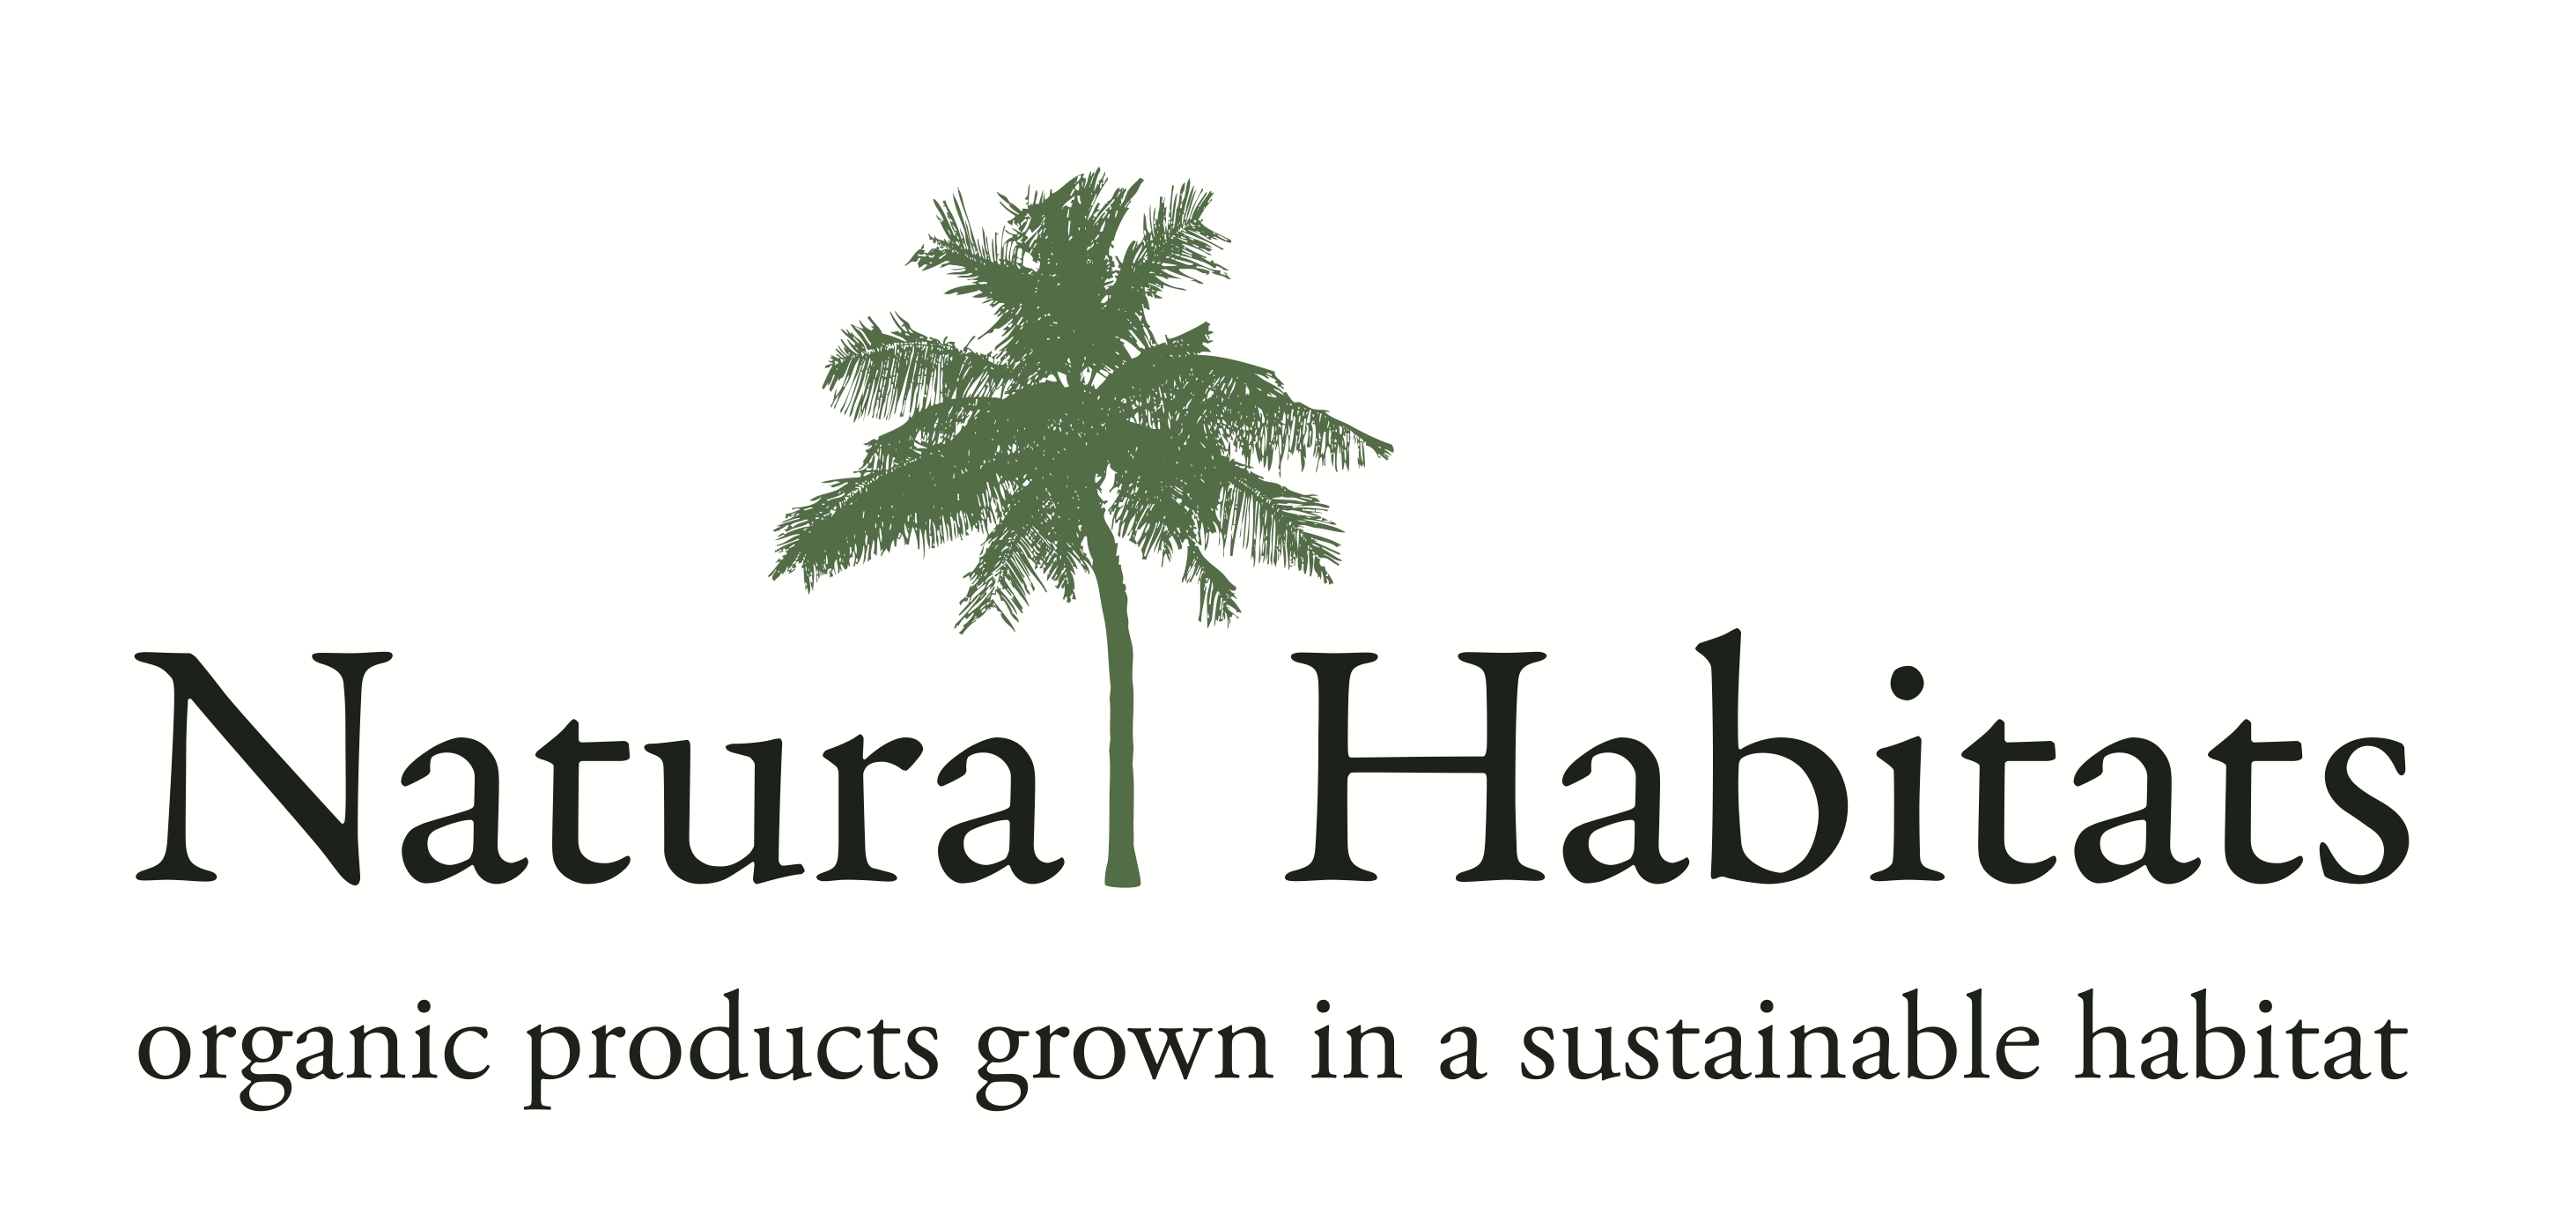 Natural Habitats Group